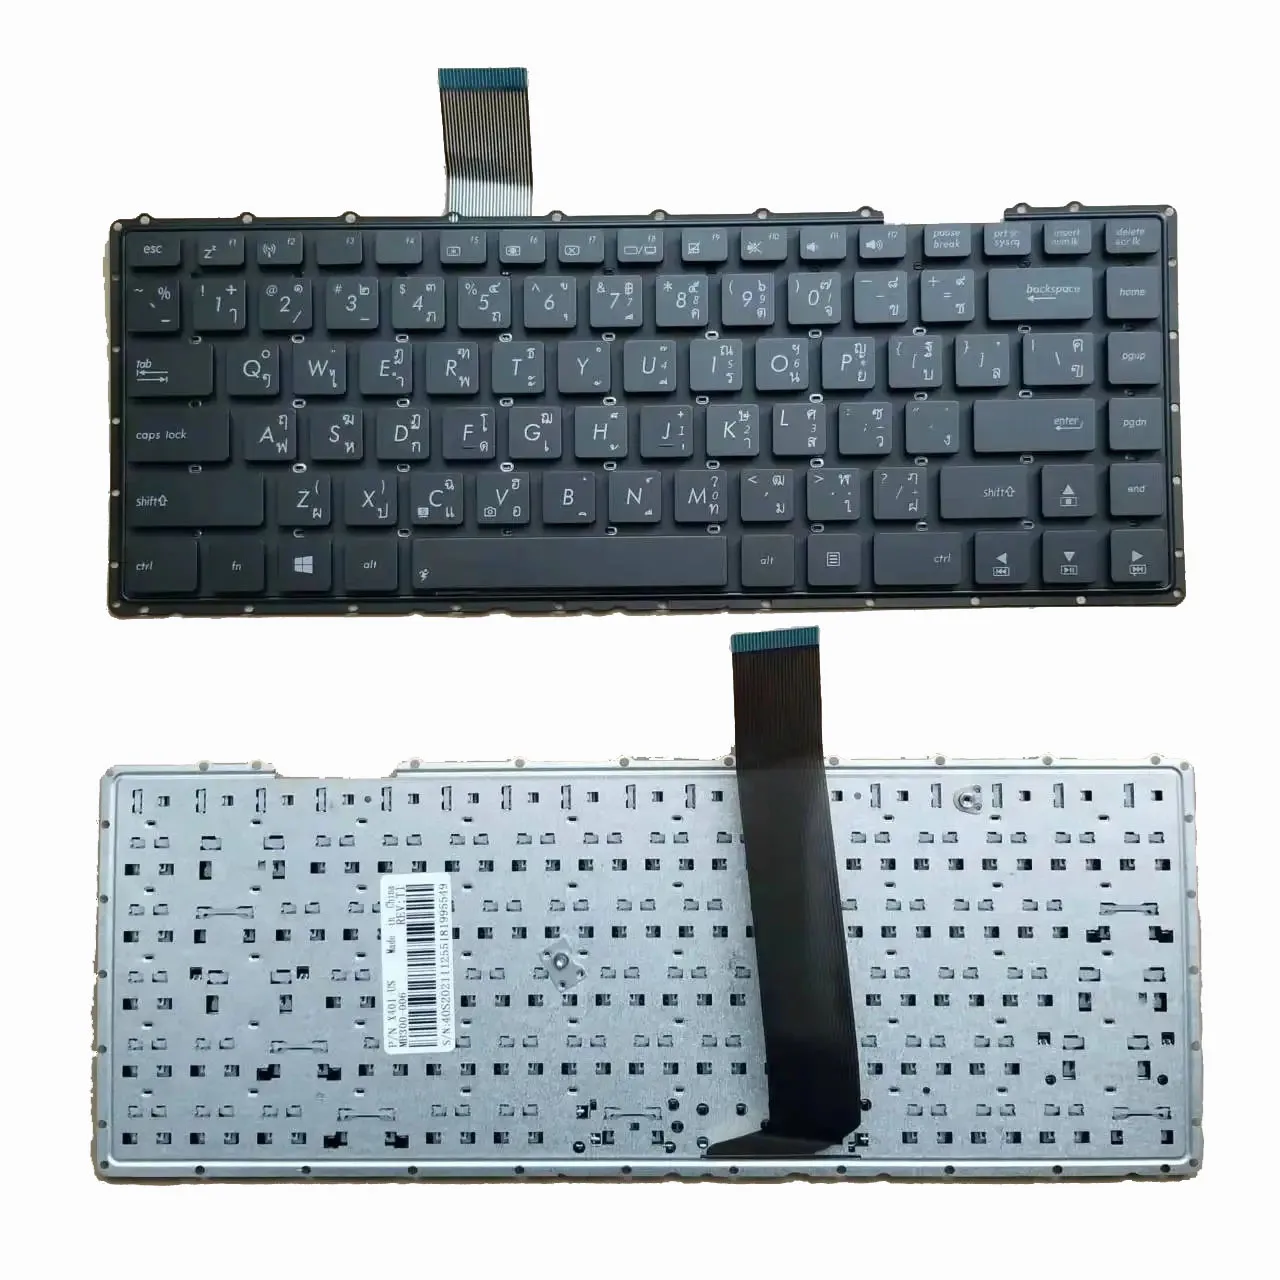 

New TI Thai Keyboard For Asus X401 X401A X401U F401 F401A F401U Black Without Frame